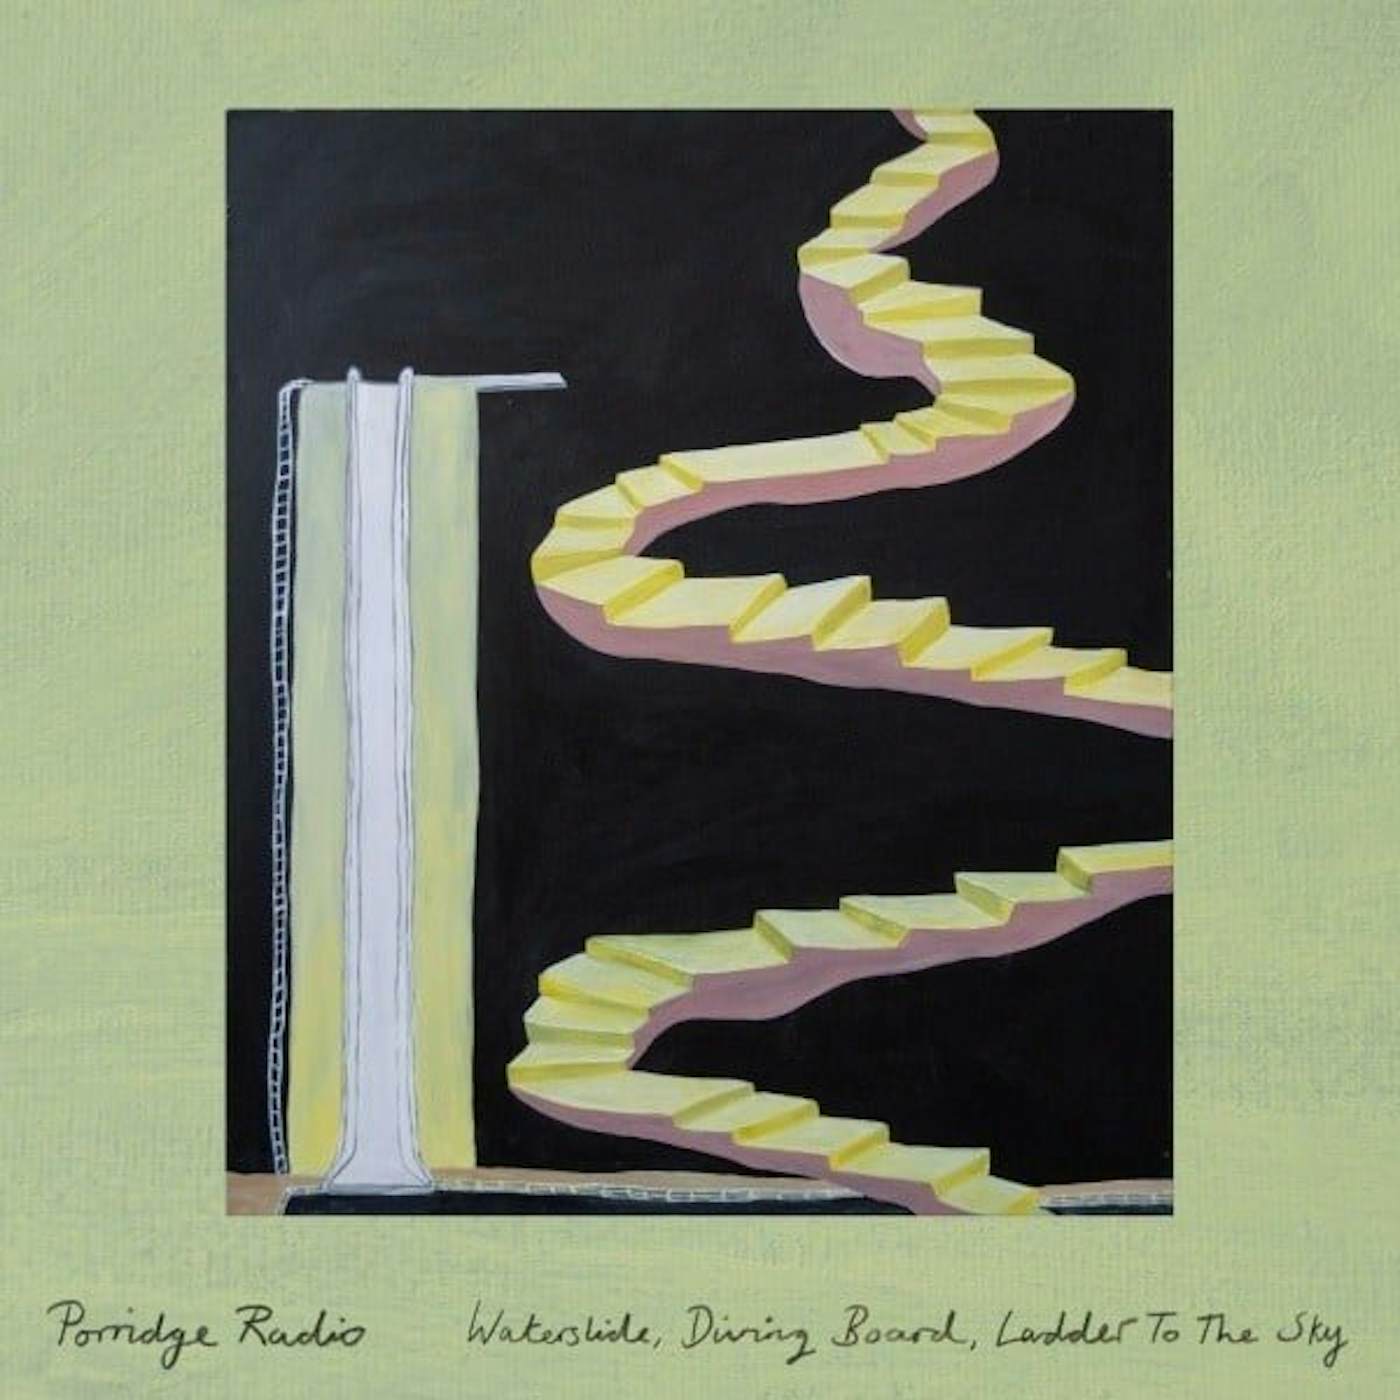 Porridge Radio Waterslide, Diving Board, Ladder To The Sky Vinyl Record